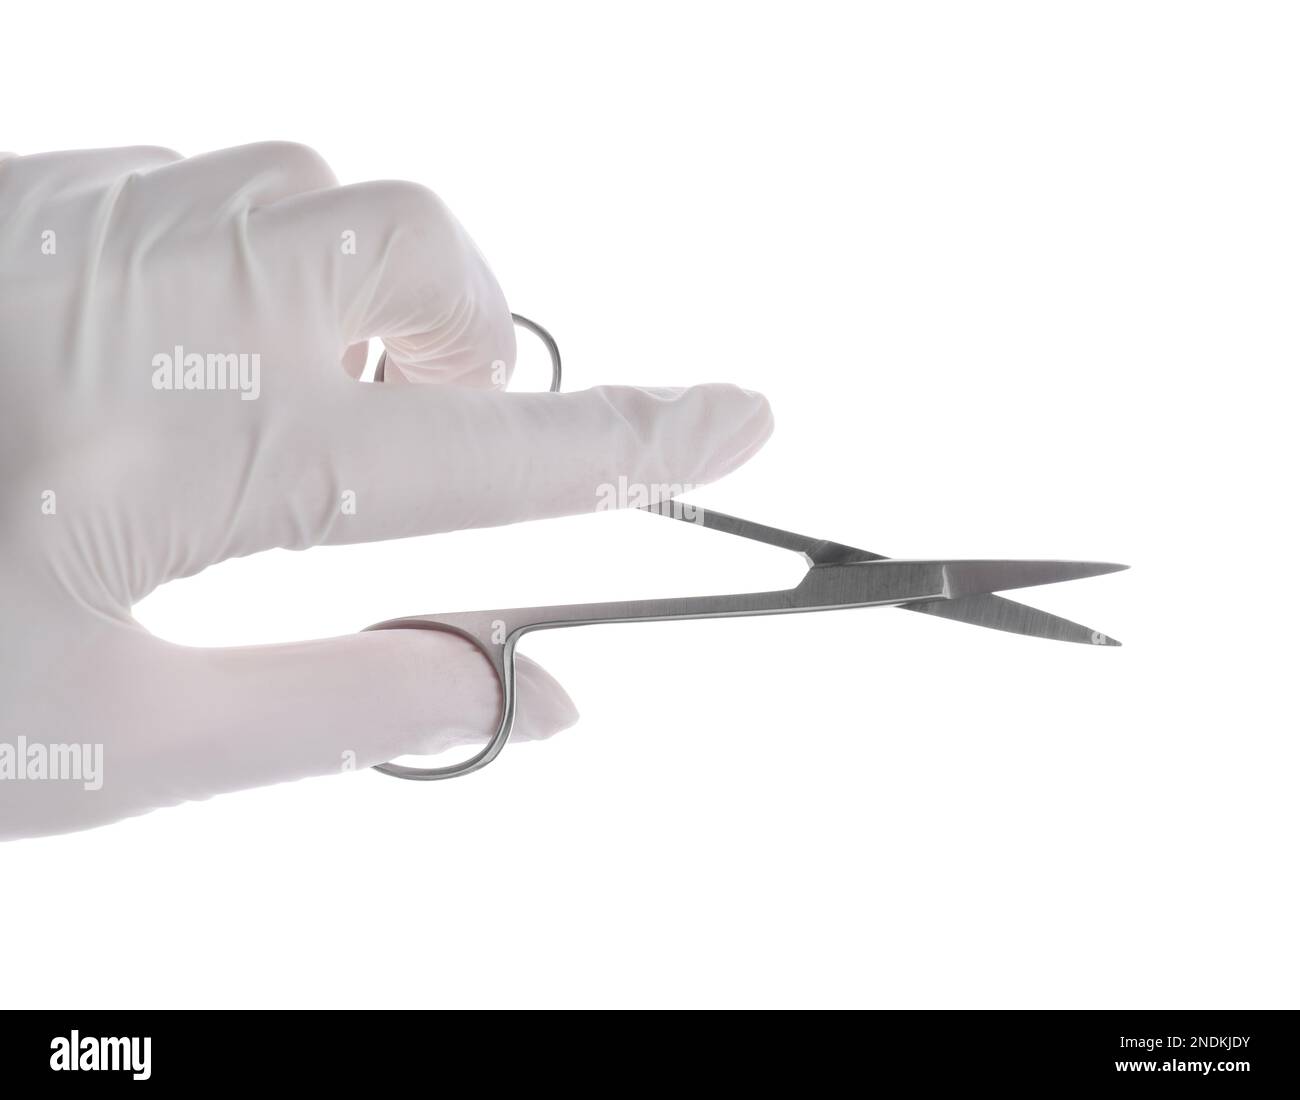 Medico tenendo forbici chirurgiche su sfondo bianco, primo piano. Strumento medico Foto Stock